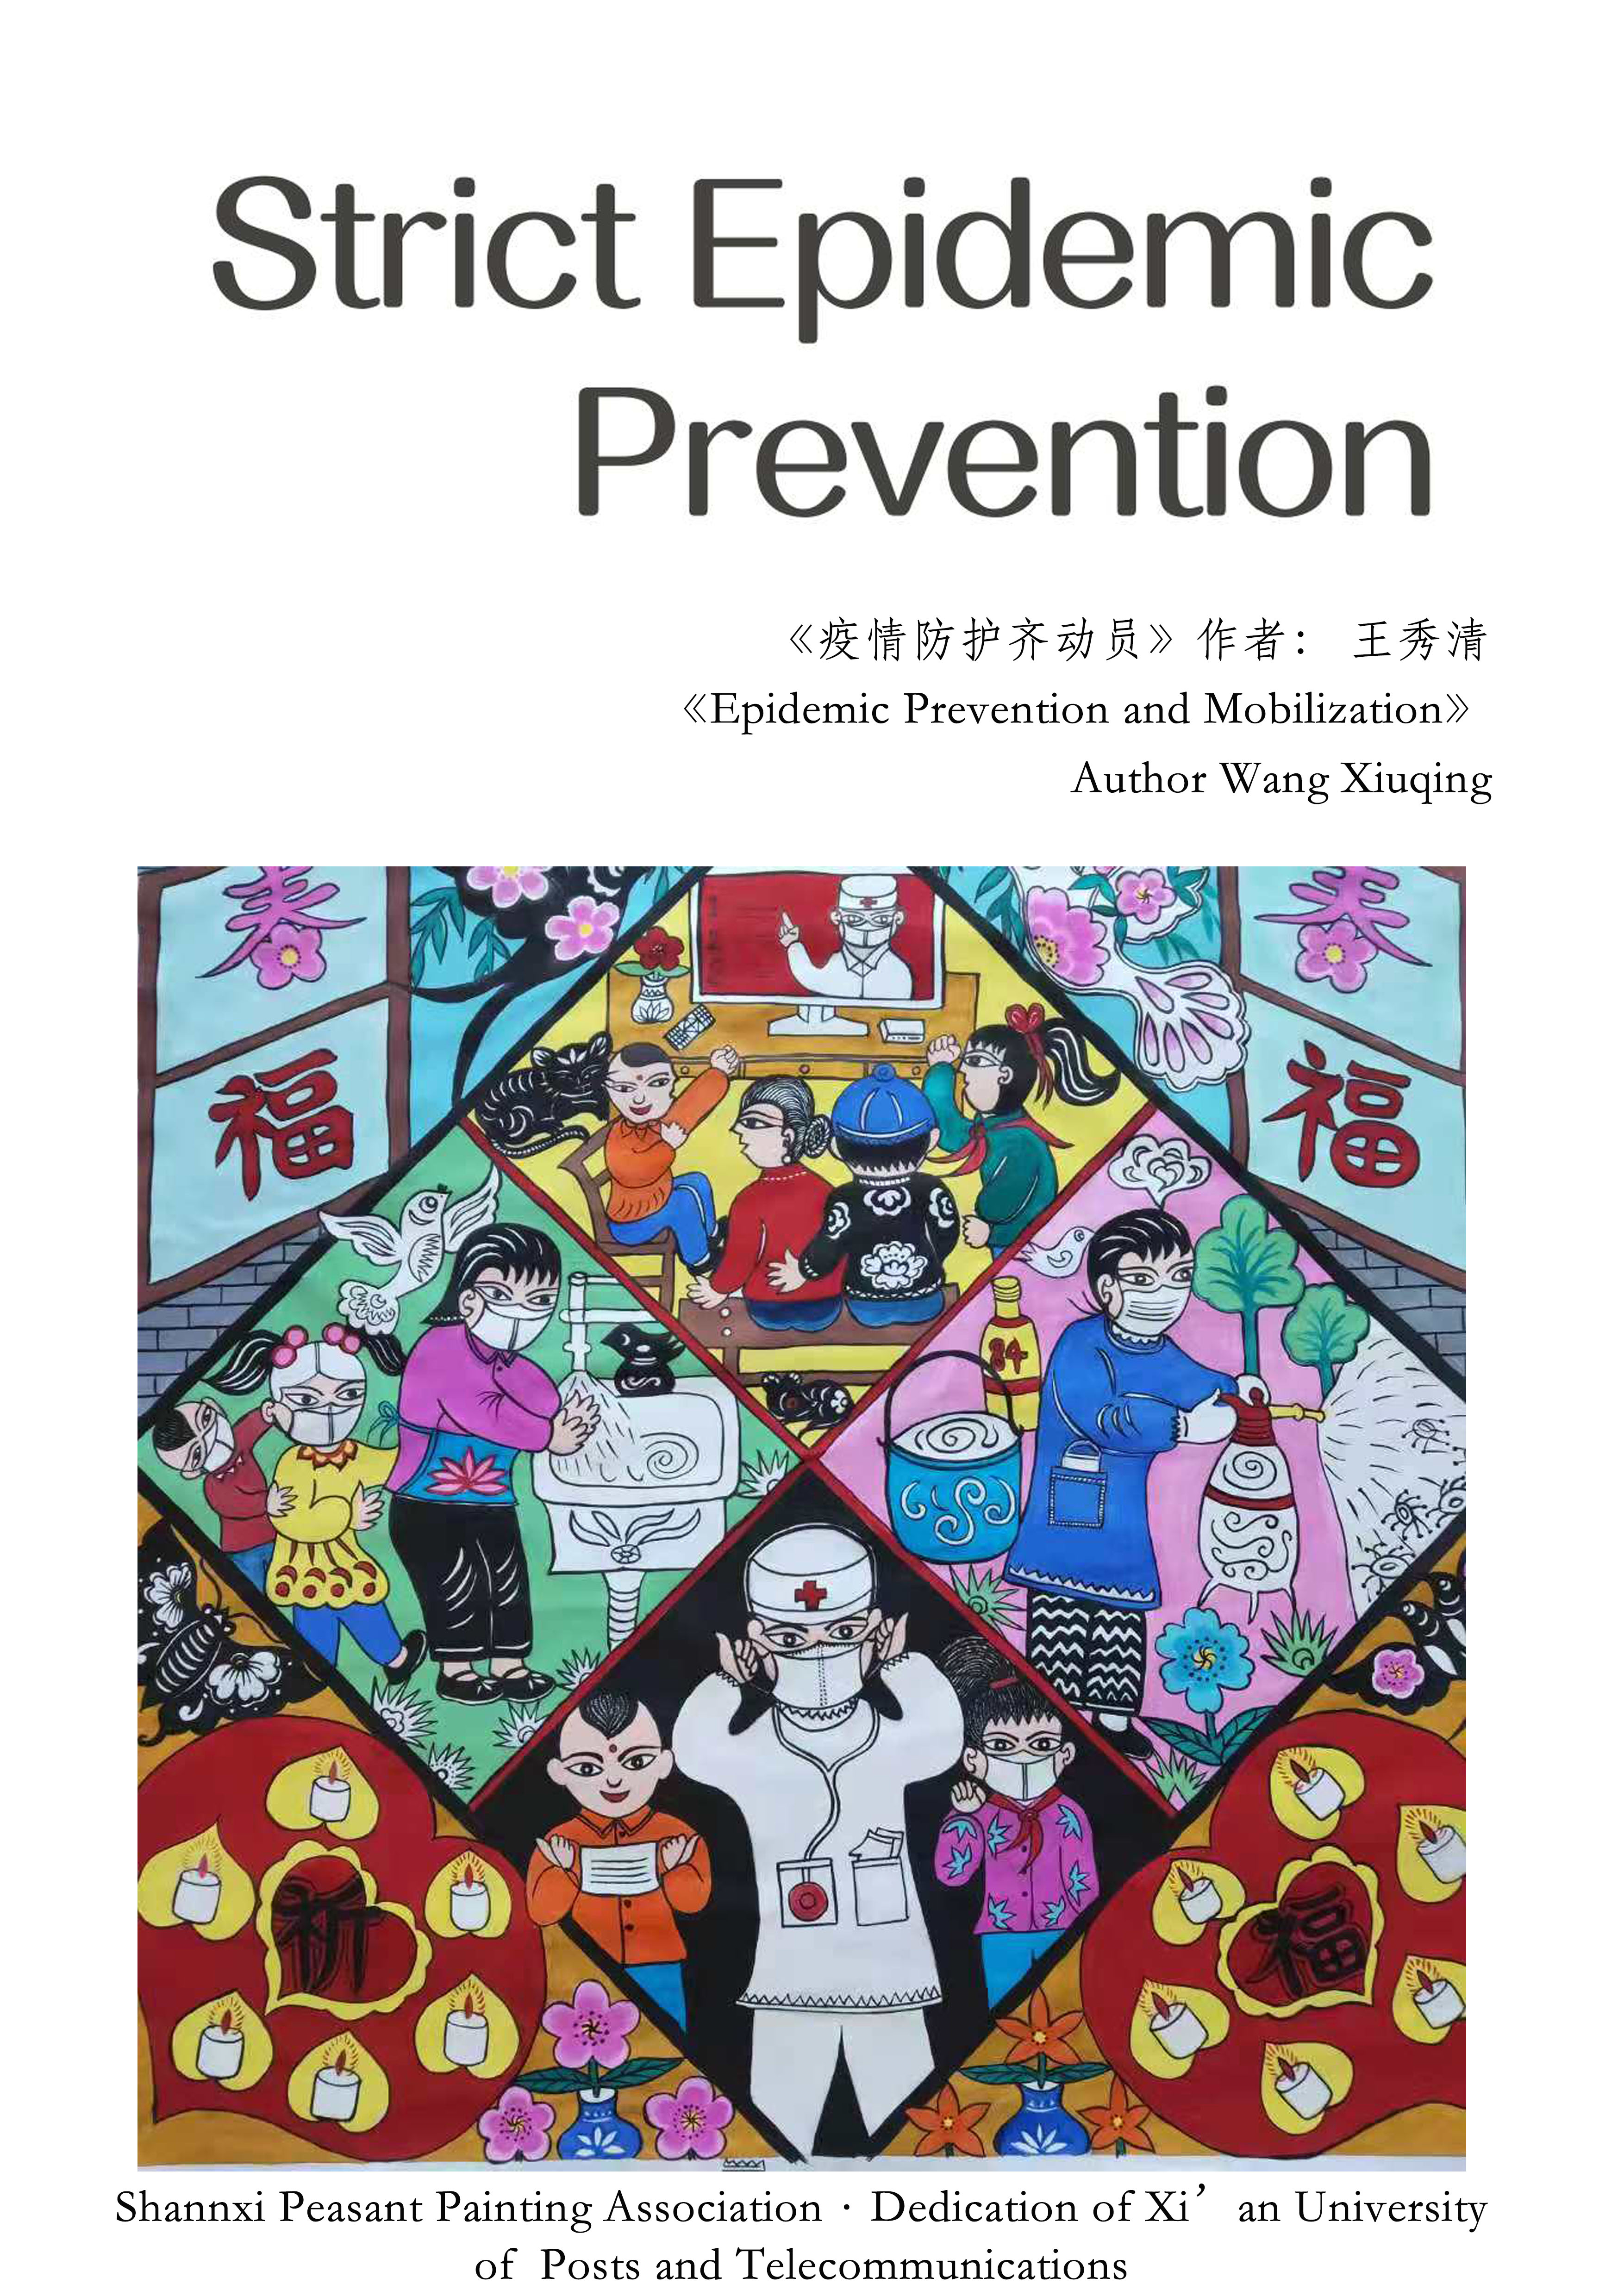 陕西省农民画协会推出多语种农民画作品 助力全球抗疫